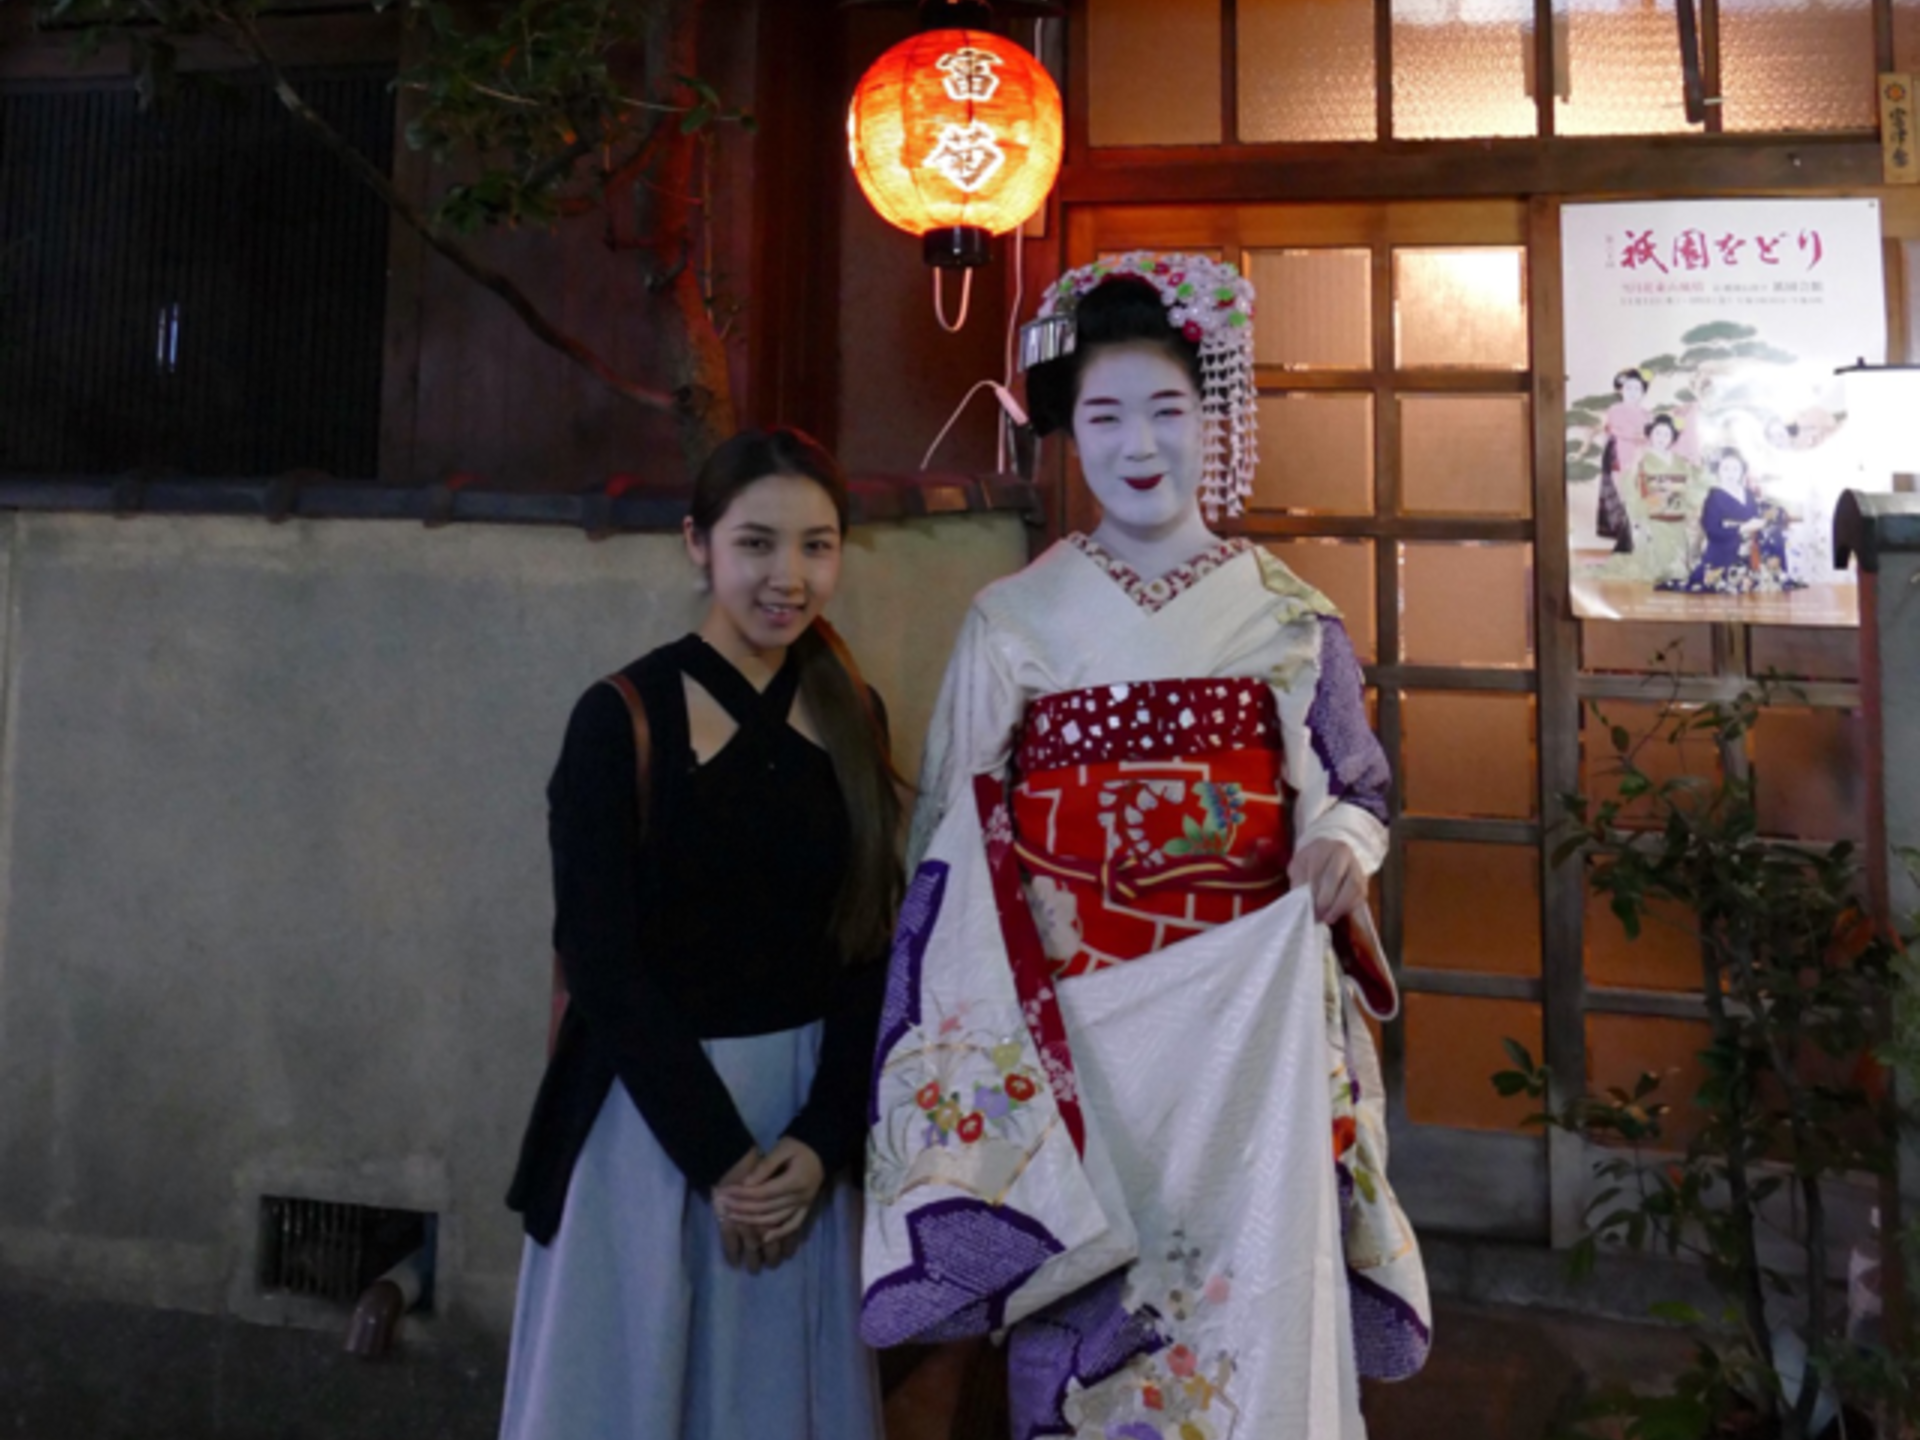 祇園で舞妓さんと写真も撮れる⁉「お座敷遊び」体験‼︎お抹茶と和菓子付き